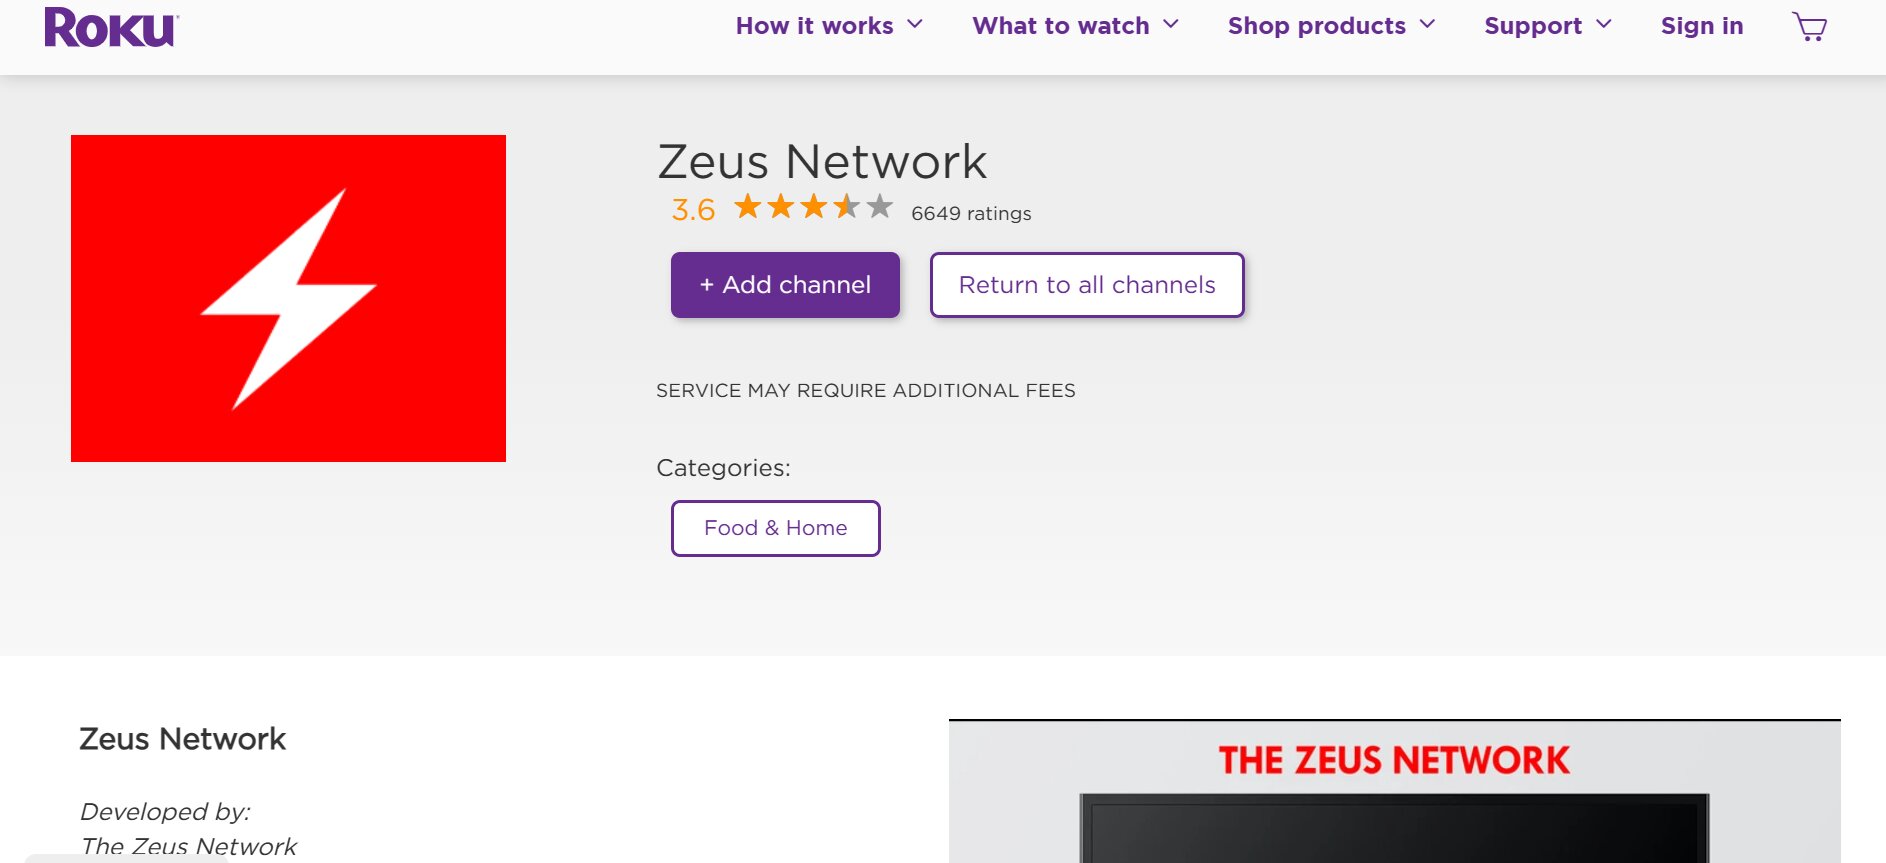 Zeus Network Roku 